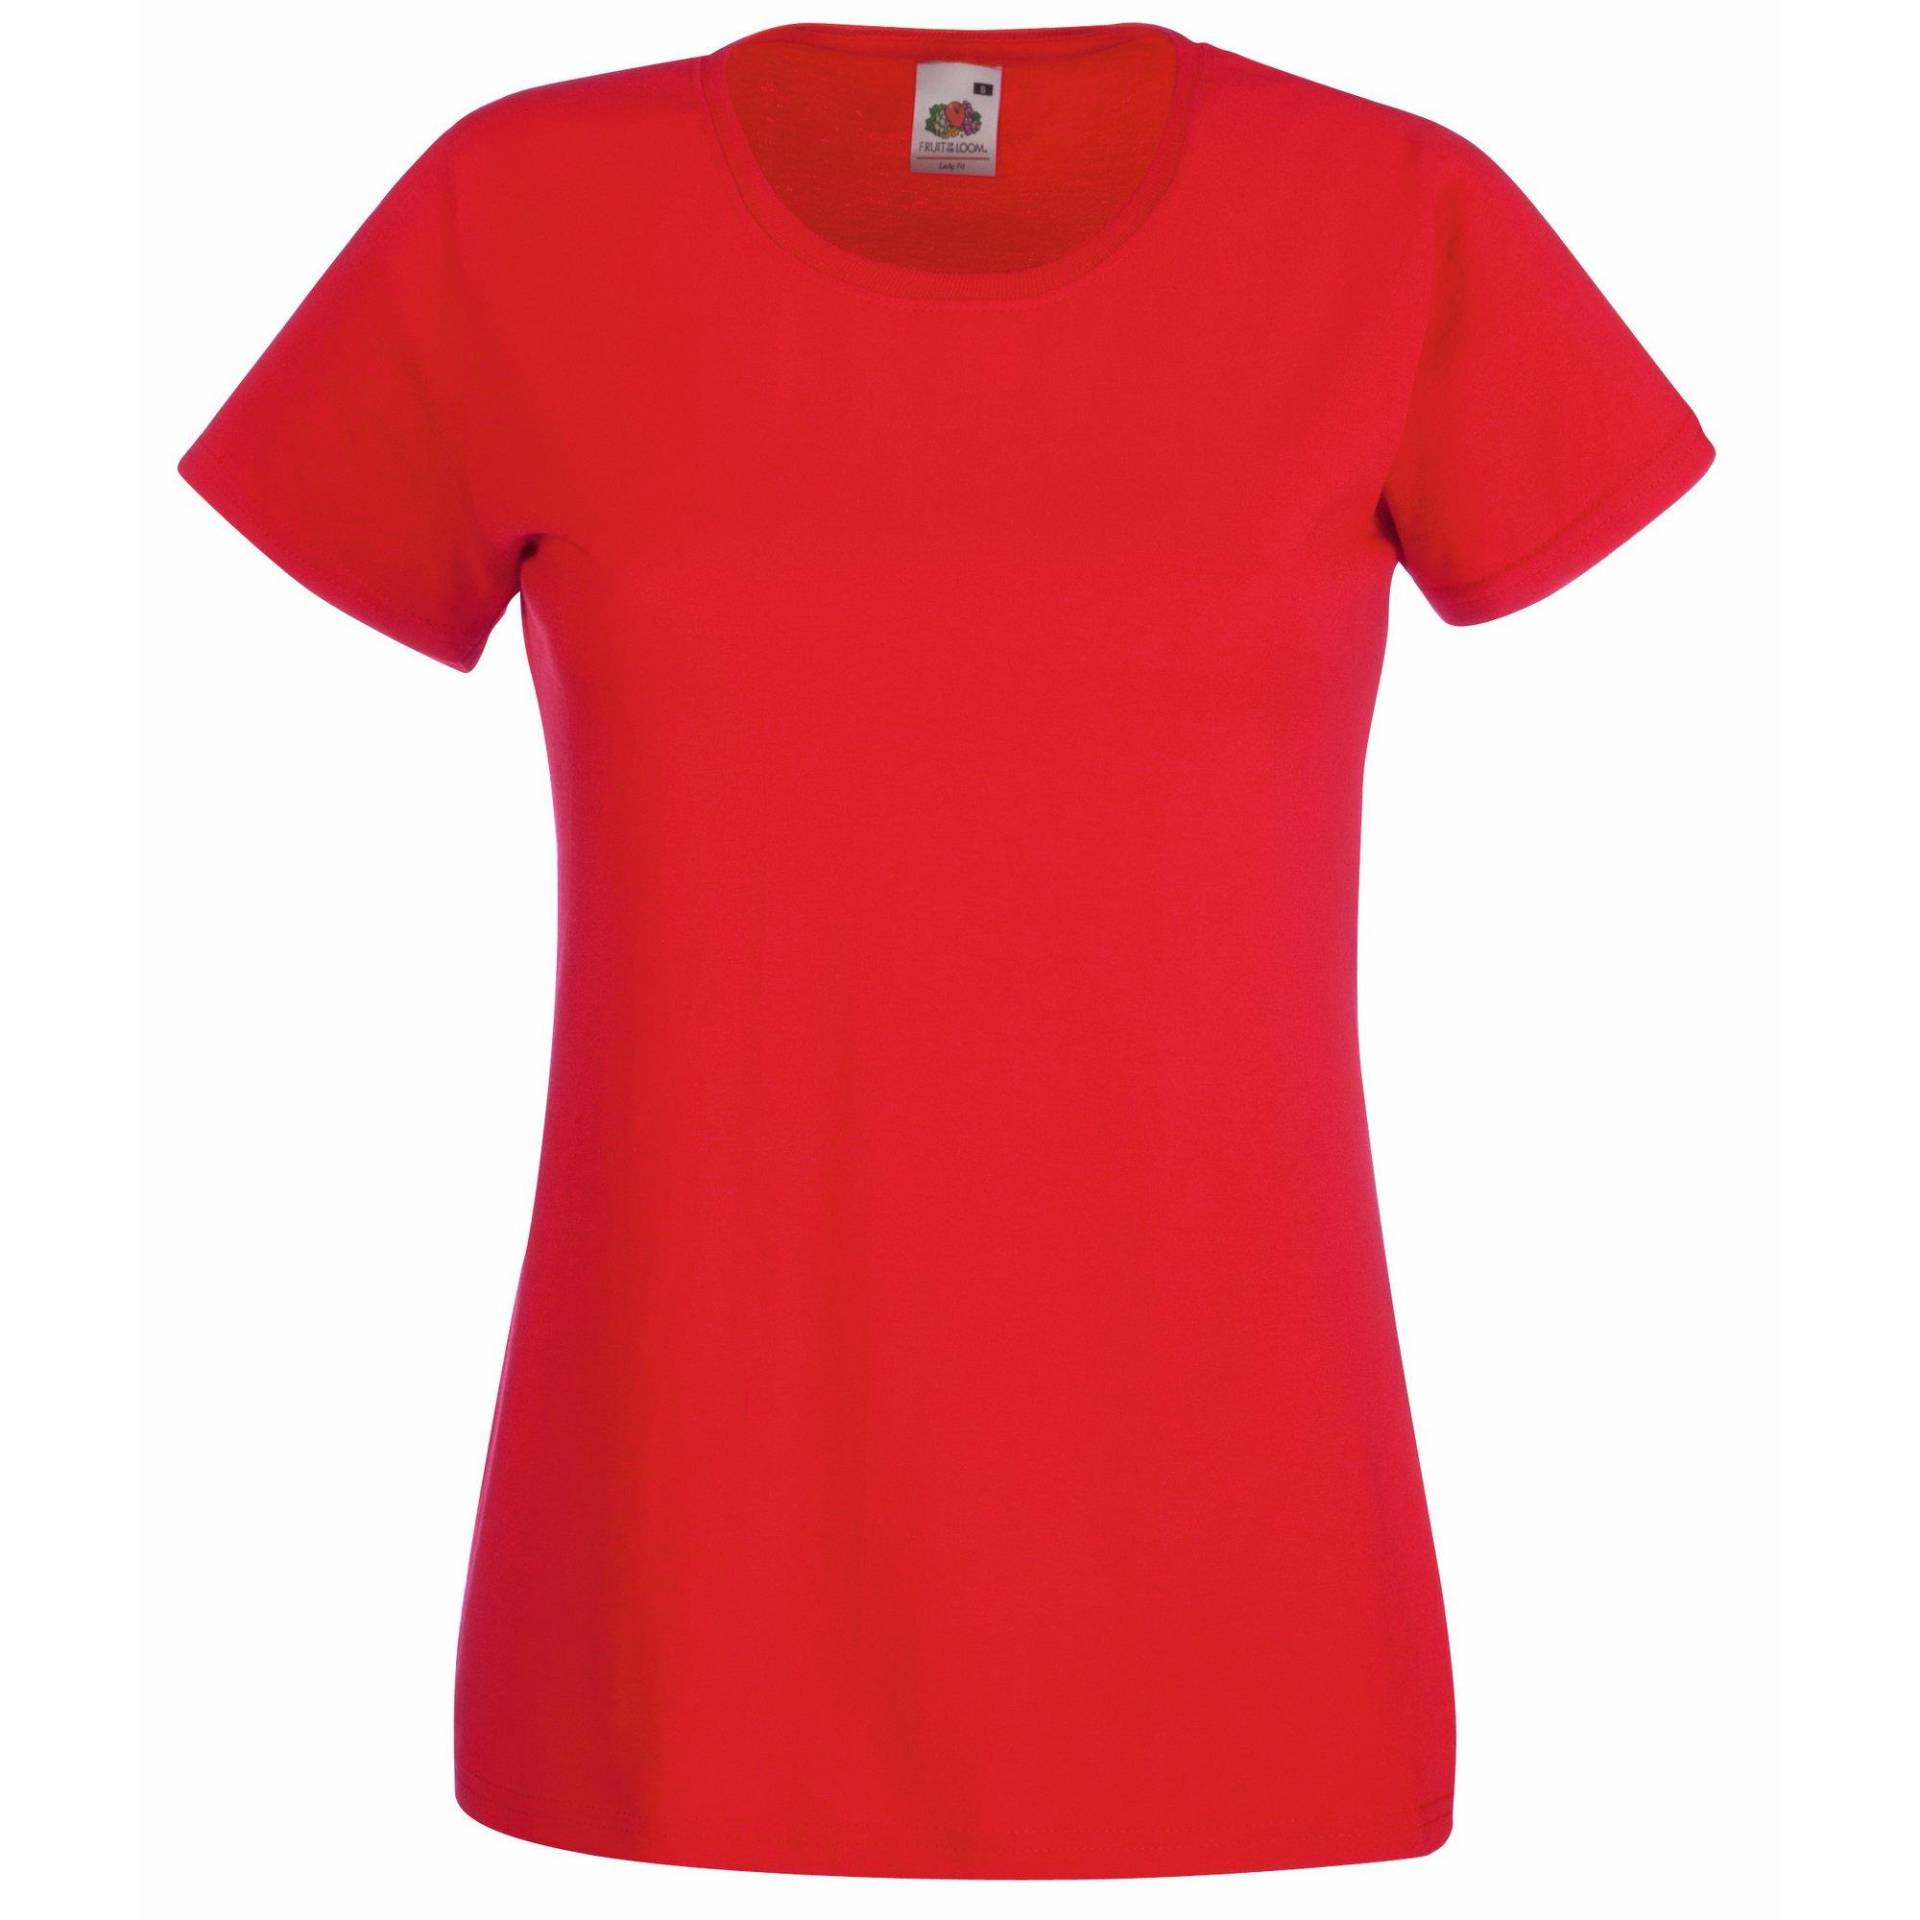 Ladyfit Tshirt (5 Stückpackung) Damen Rot Bunt XL von Fruit of the Loom